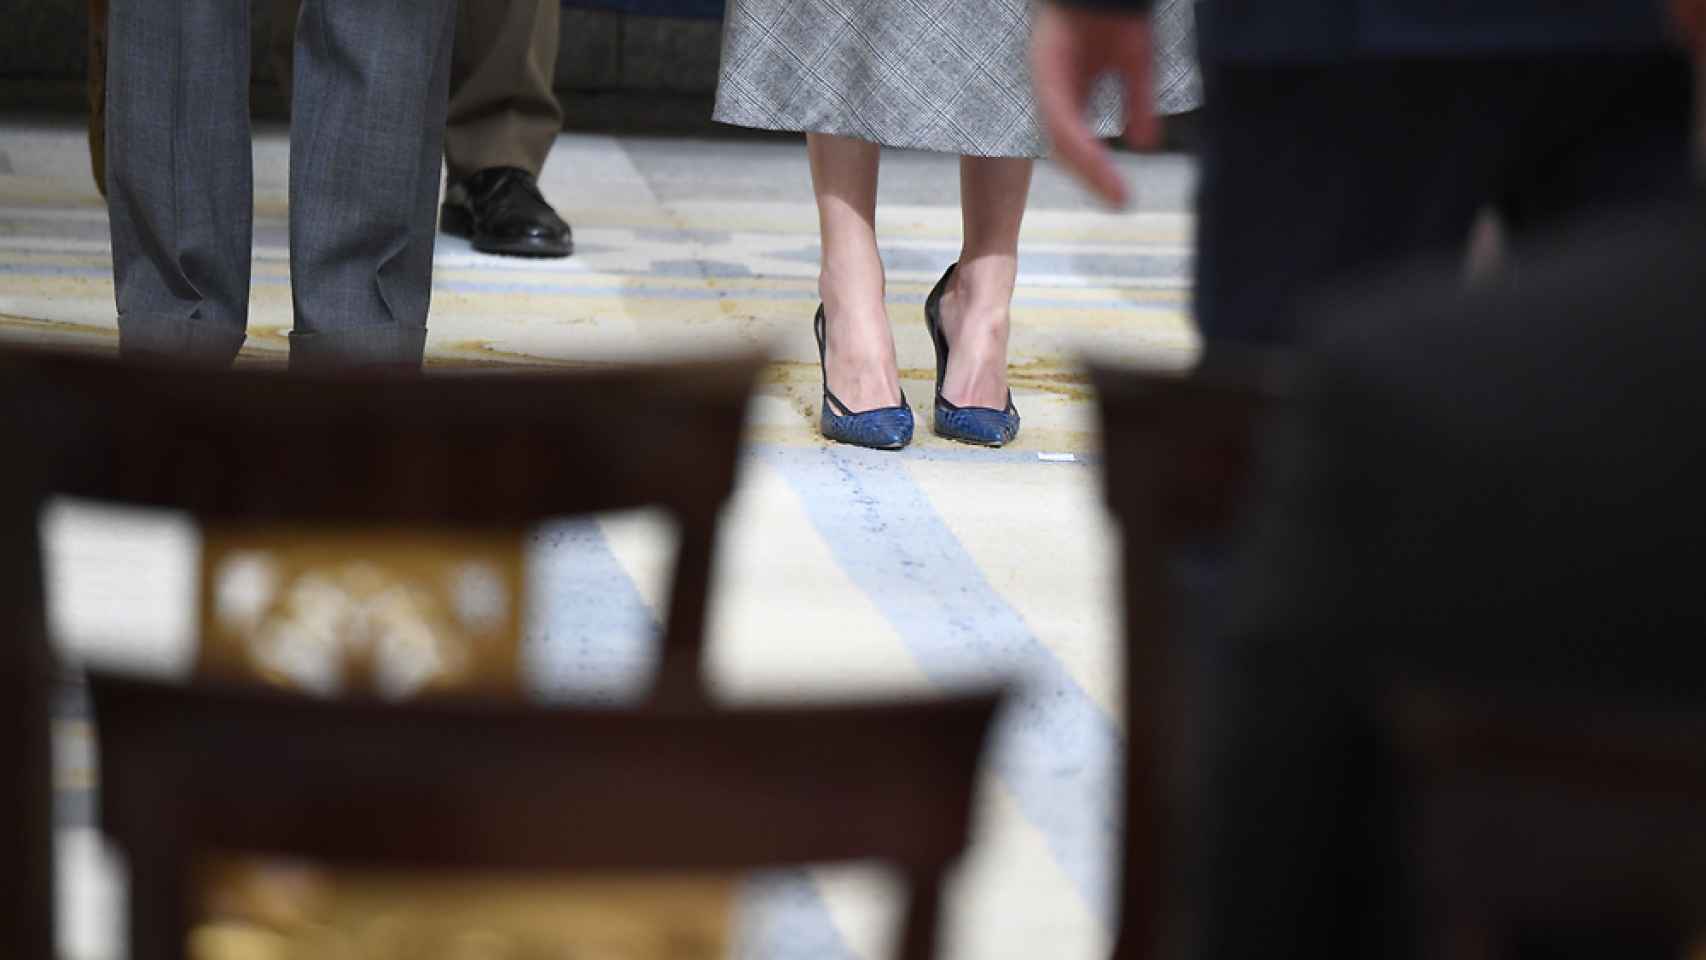 Detalle de los zapatos de salón de la reina en el acto de este jueves.